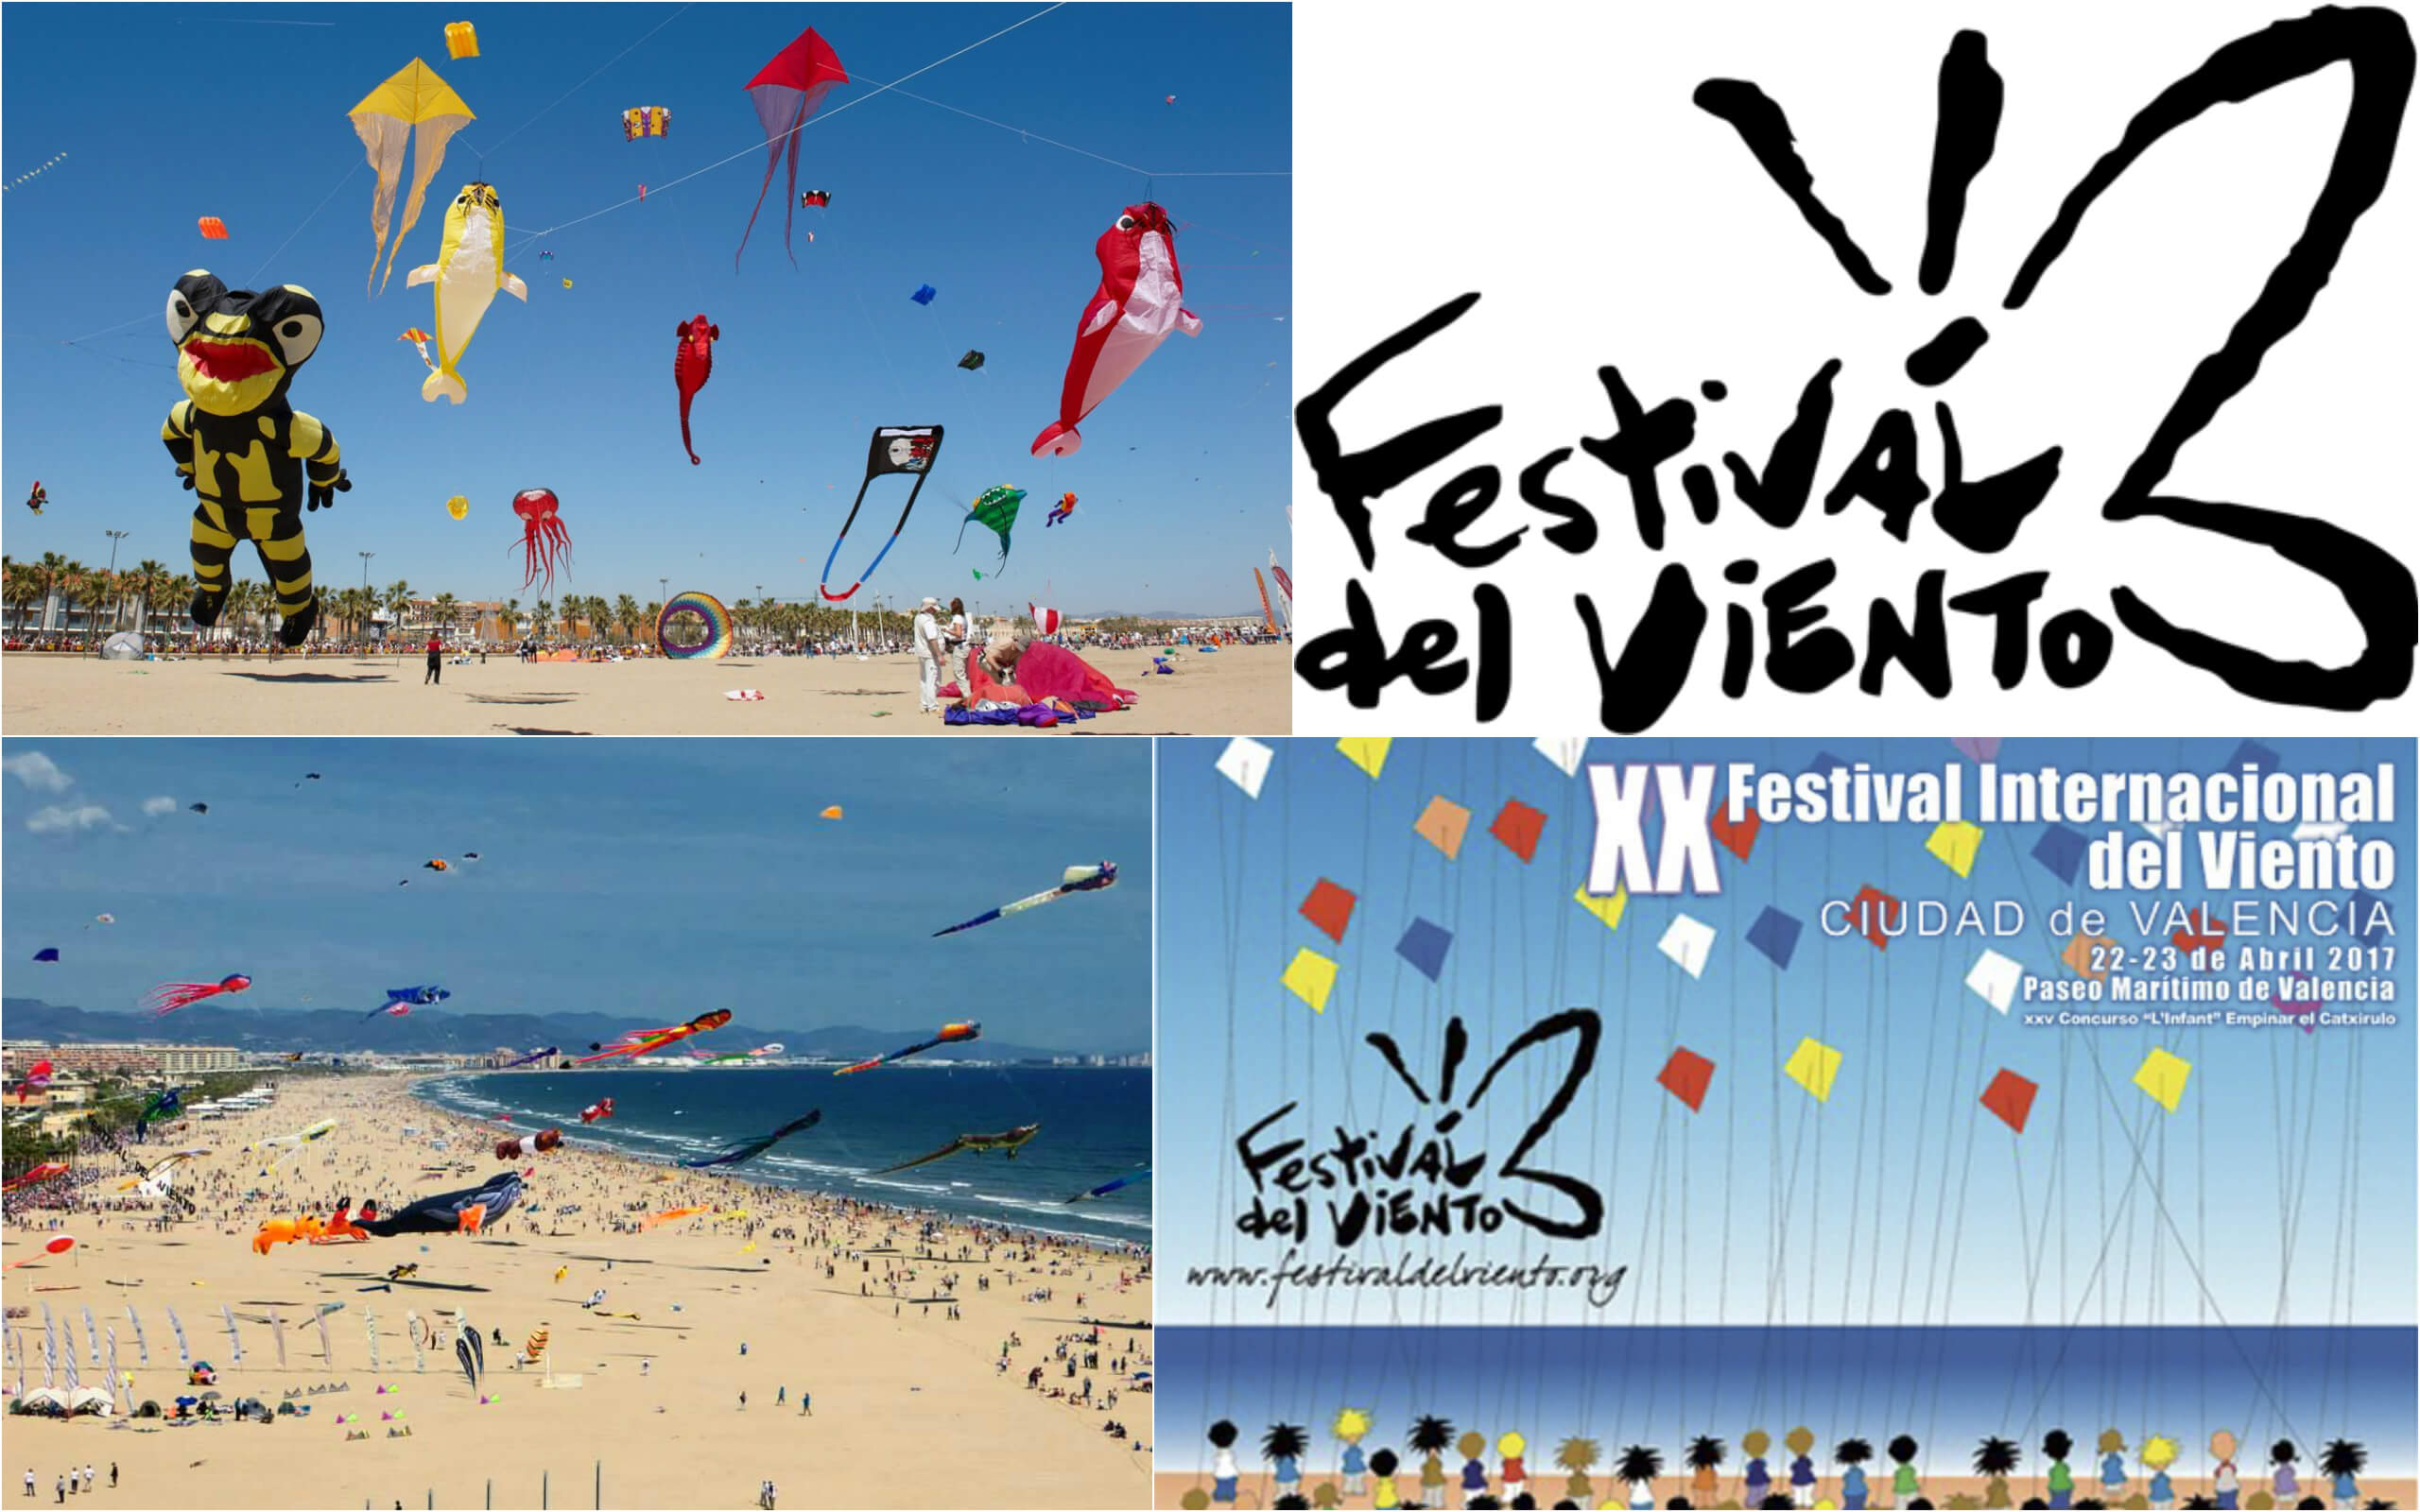 Интернациональный фестиваля Воздушных Змеев в Валенсии, Festival Internacional De Cometas 2016, ЯлюблюВаленсию, XХ Фестиваль Воздушных Змеев в Валенсии 